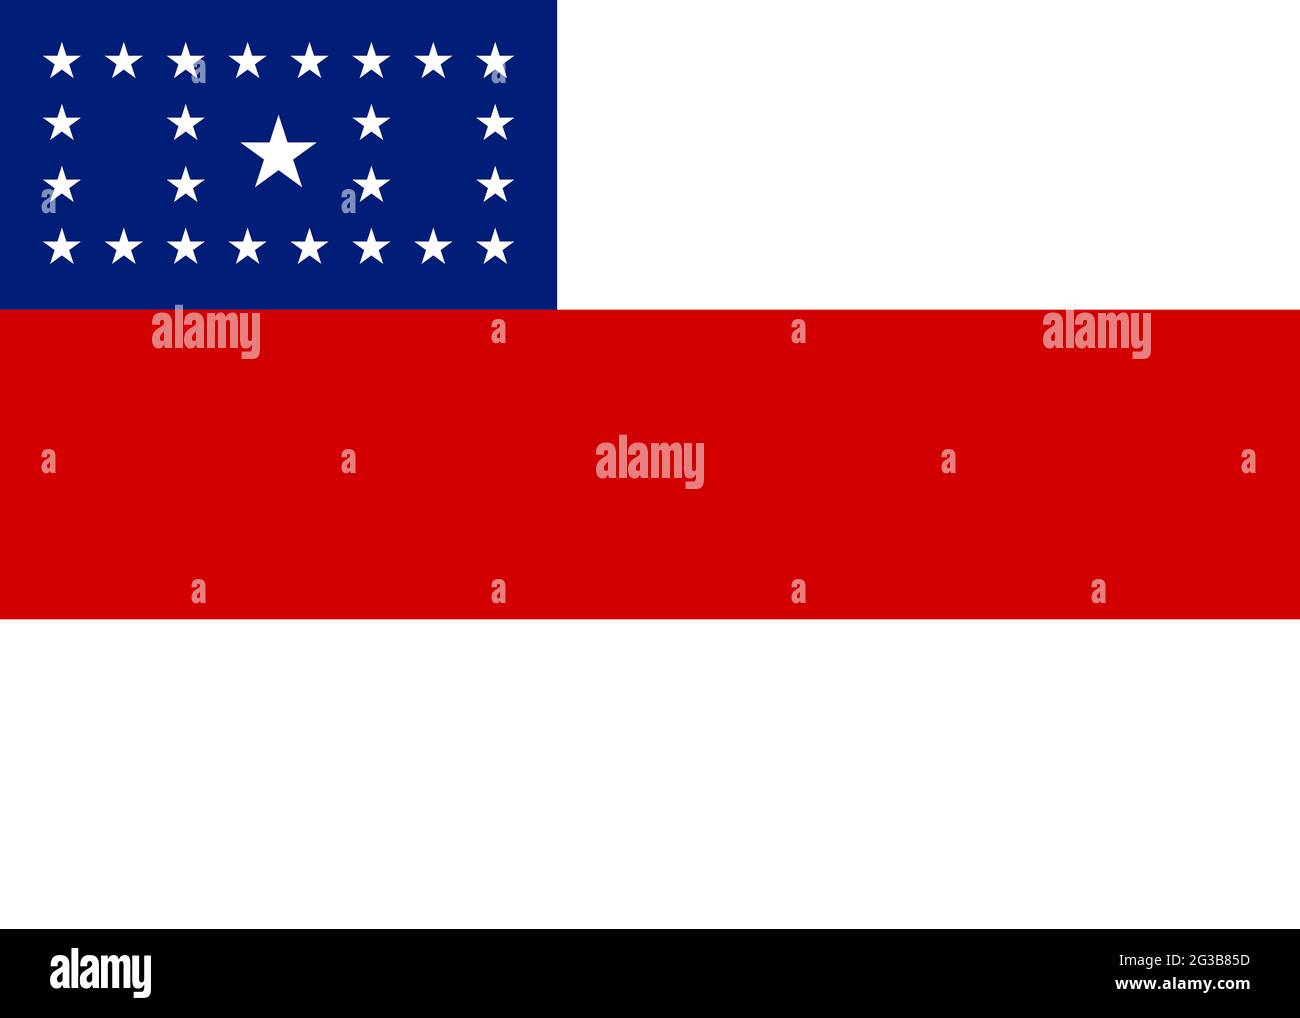 Official Large Flat Flag of Amazonas Horizontal Stock Photo